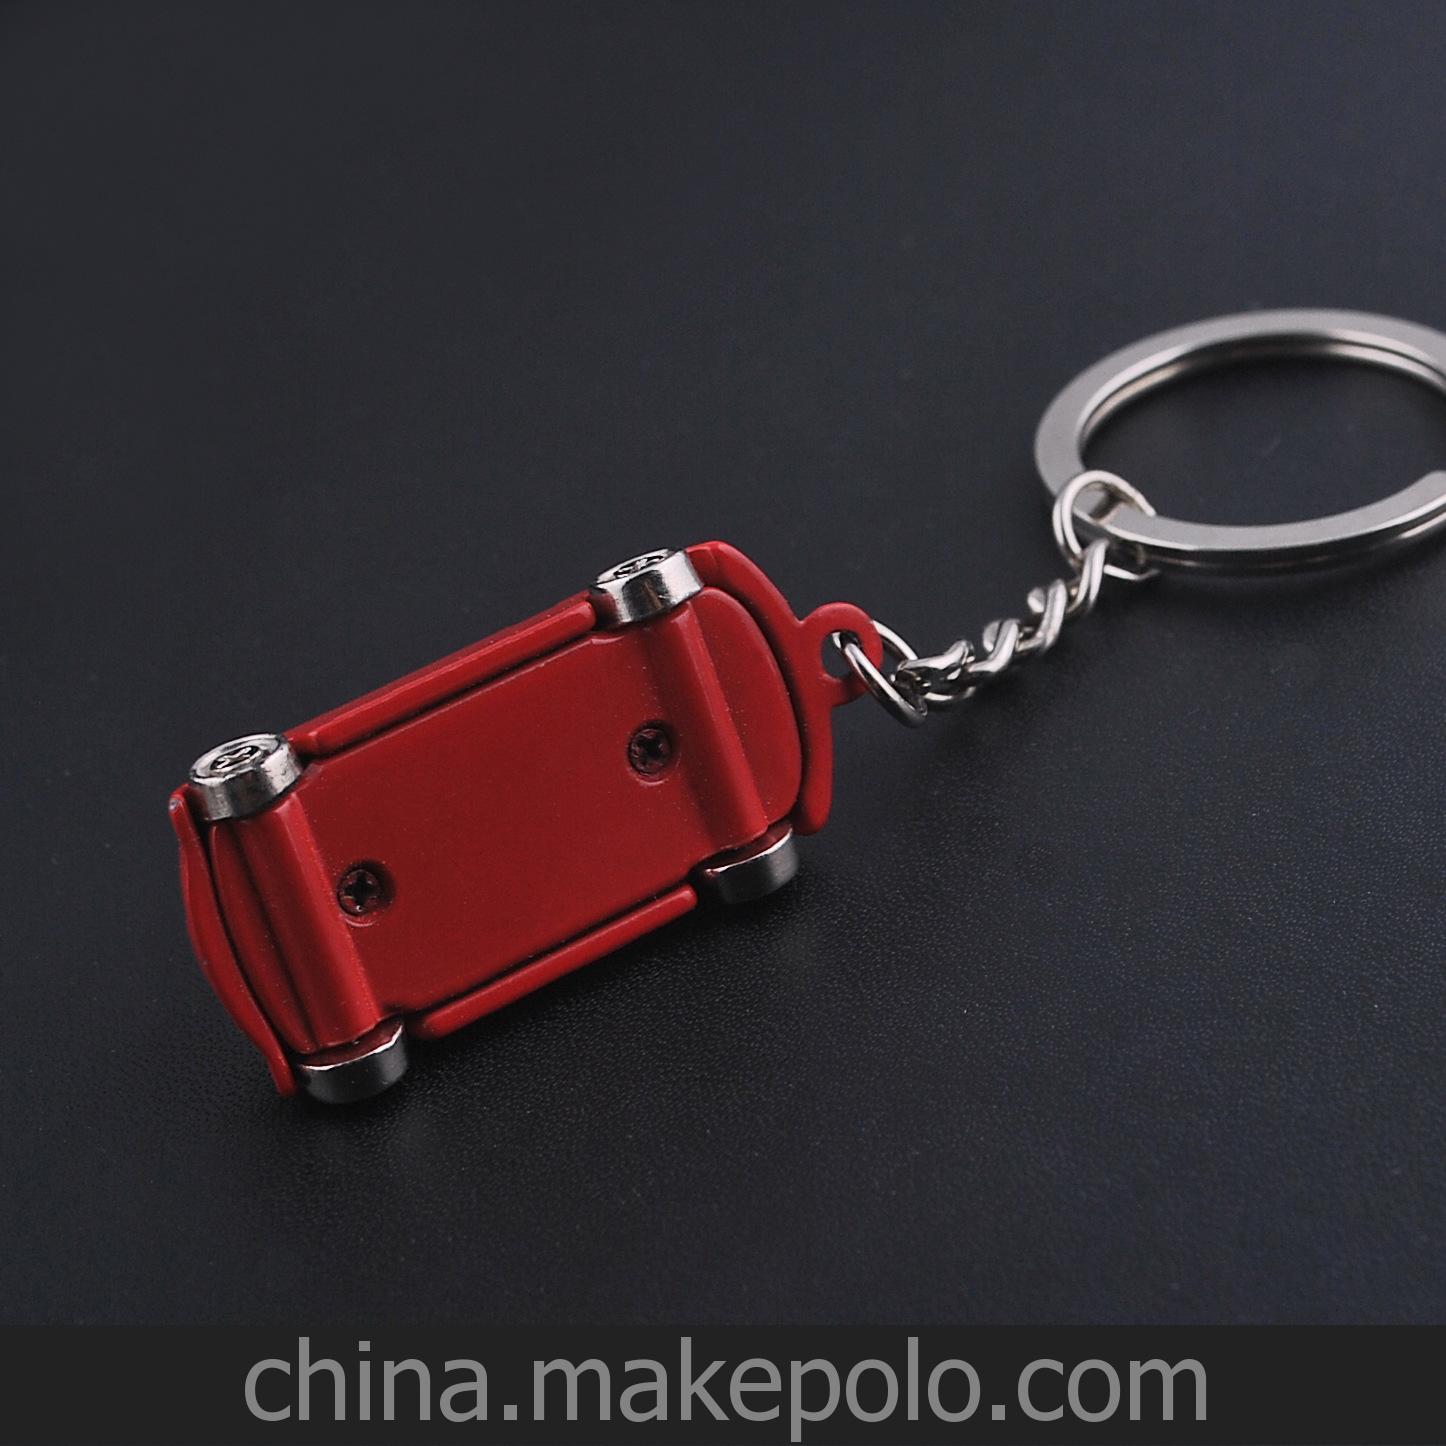 新品上架 創意禮品鑰匙扣 個性鑰匙扣 SUV汽車鑰匙扣 GX-090